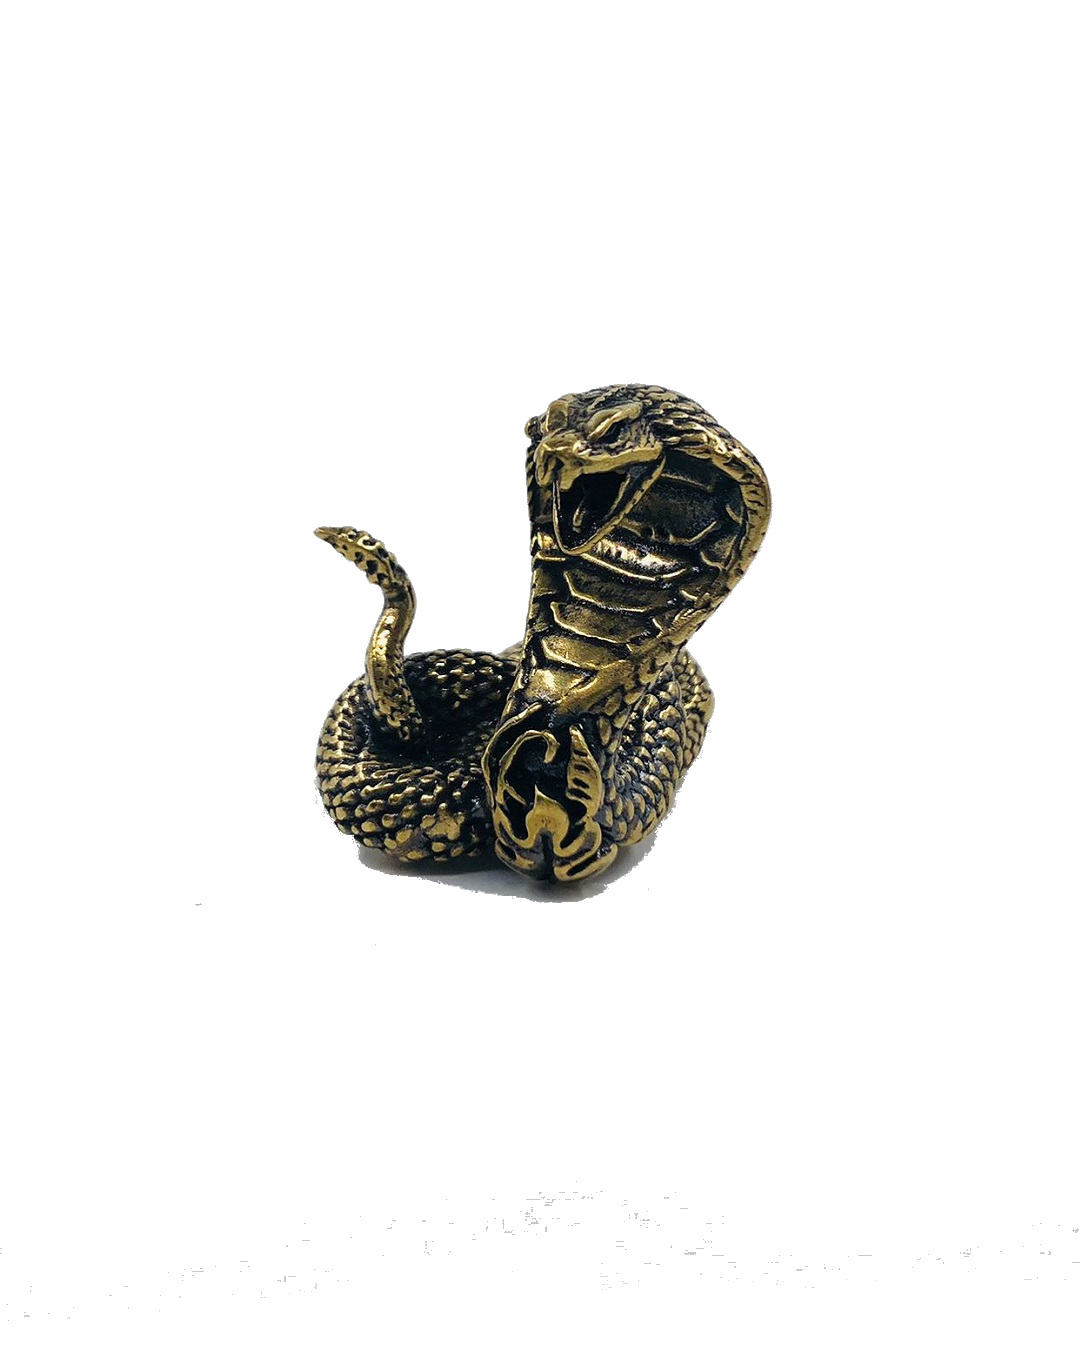 Cobra gold snake